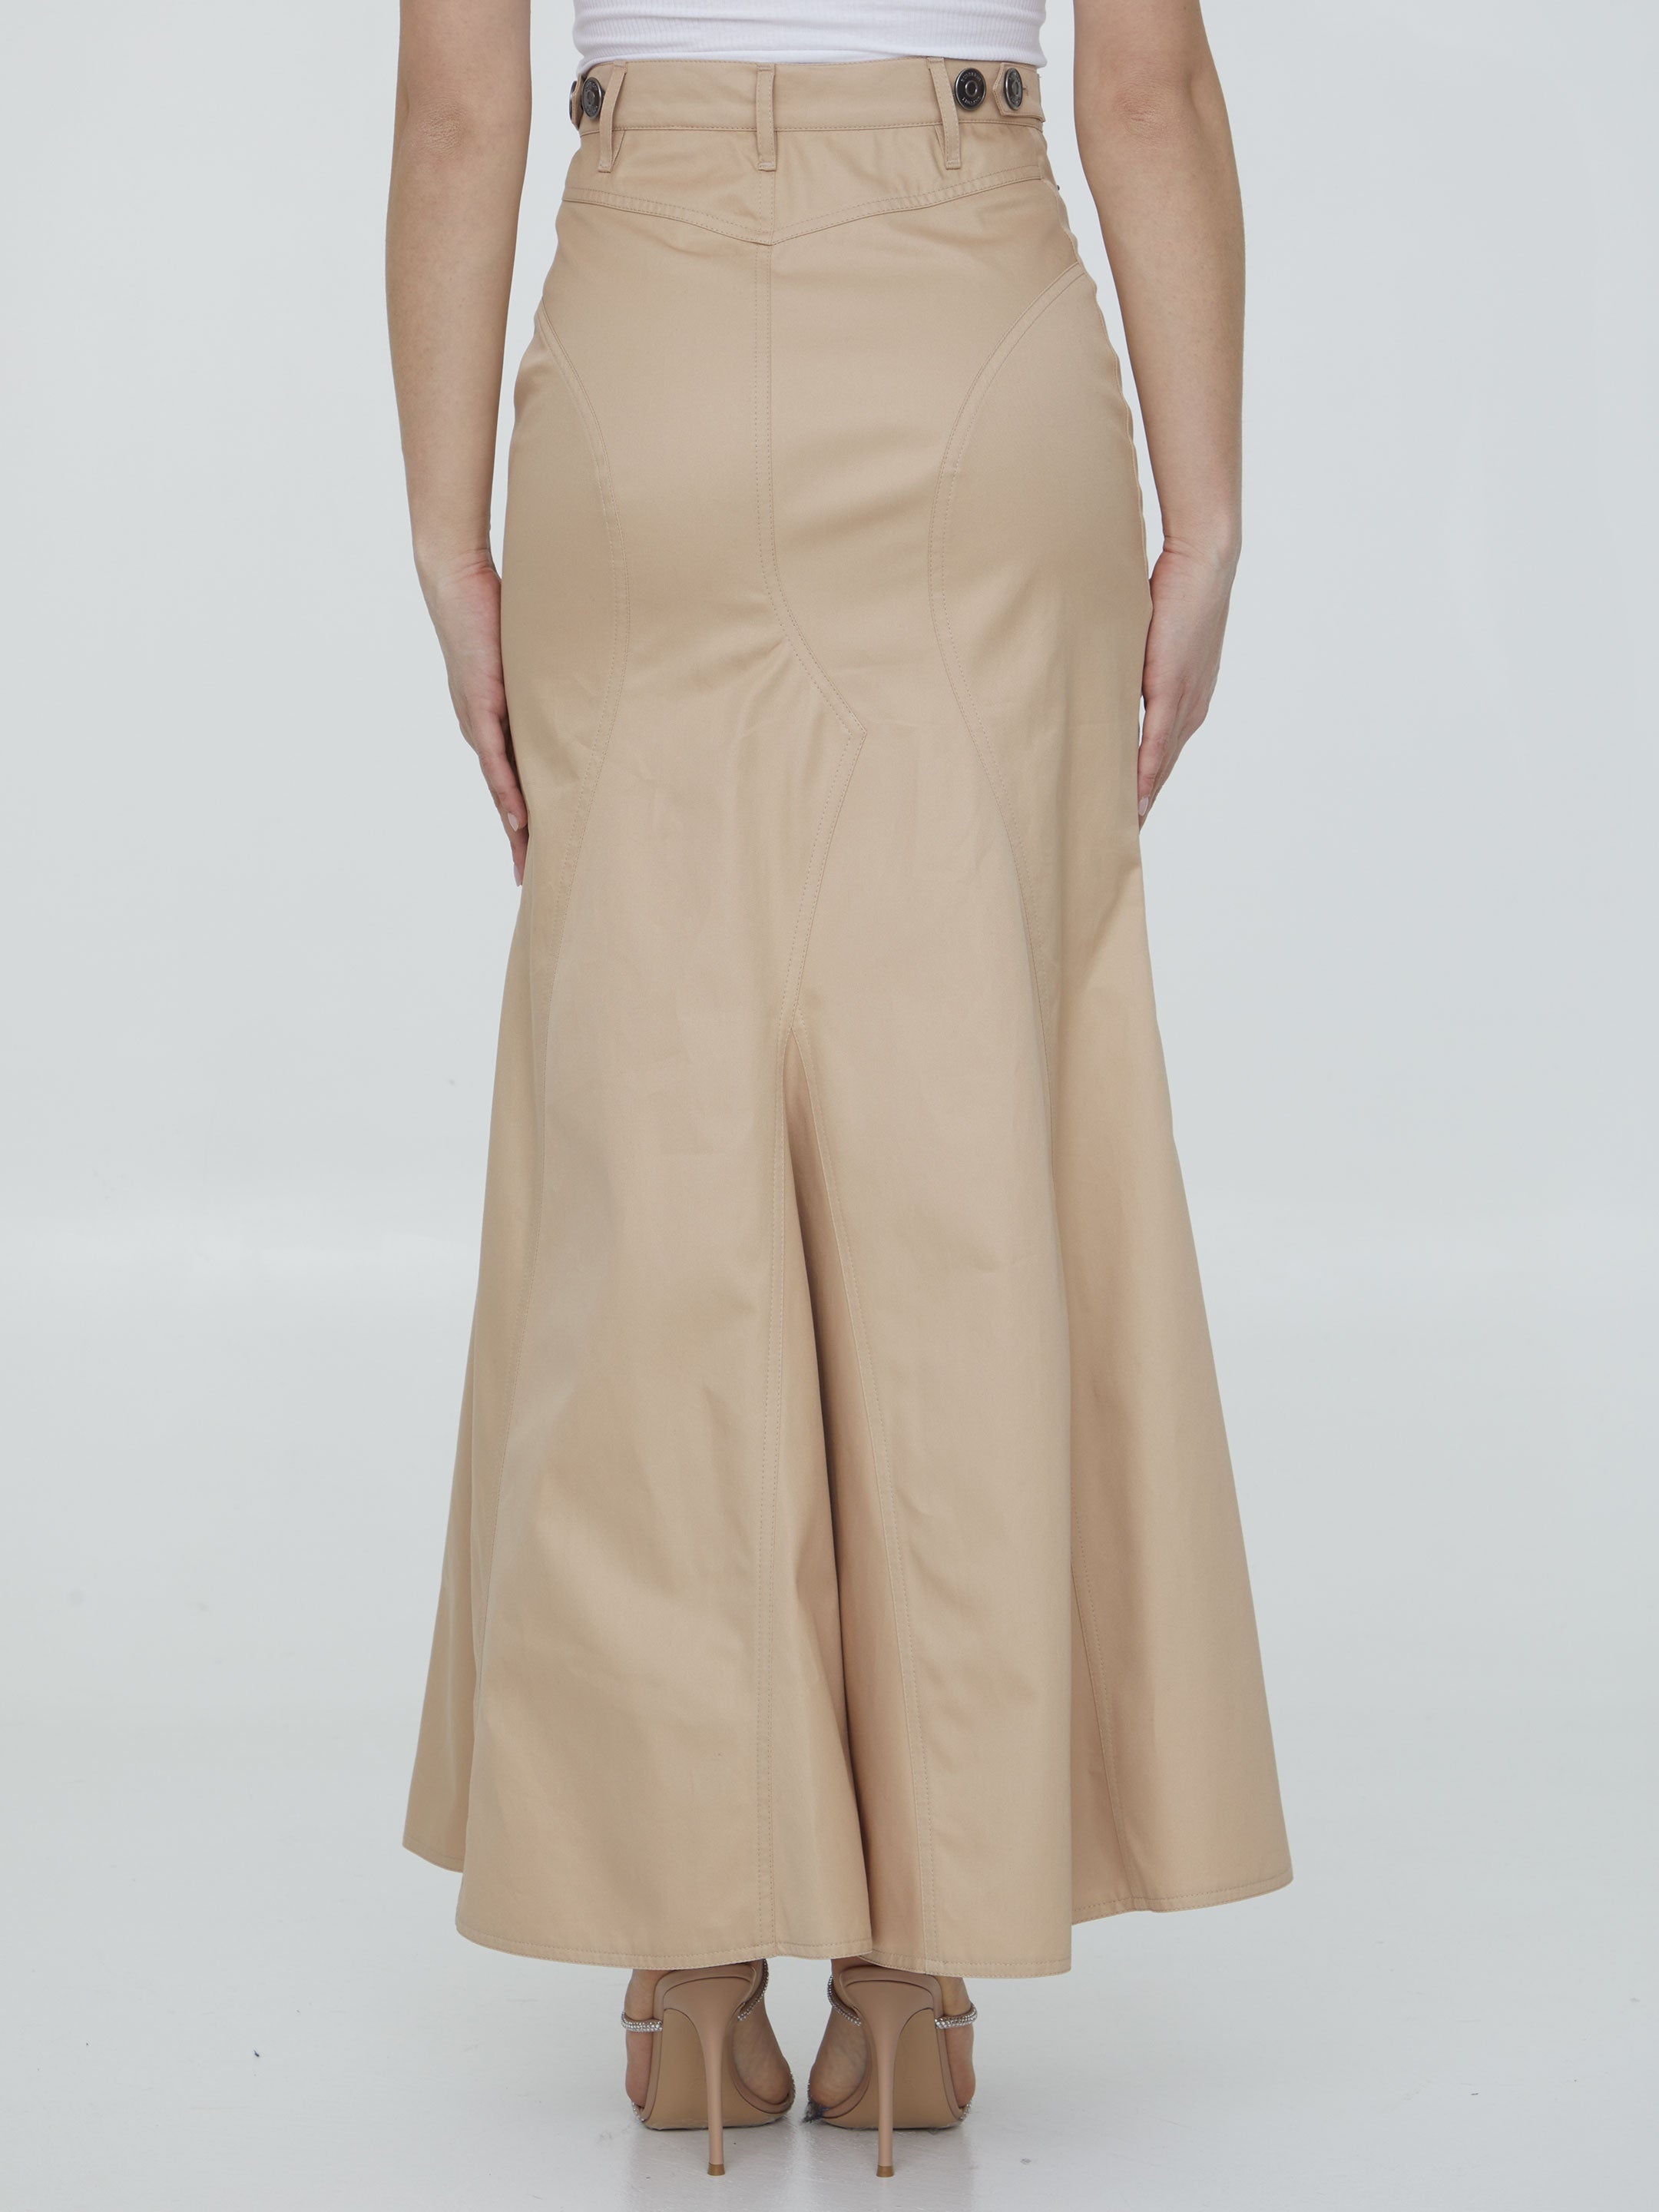 Cotton gabardine long skirt